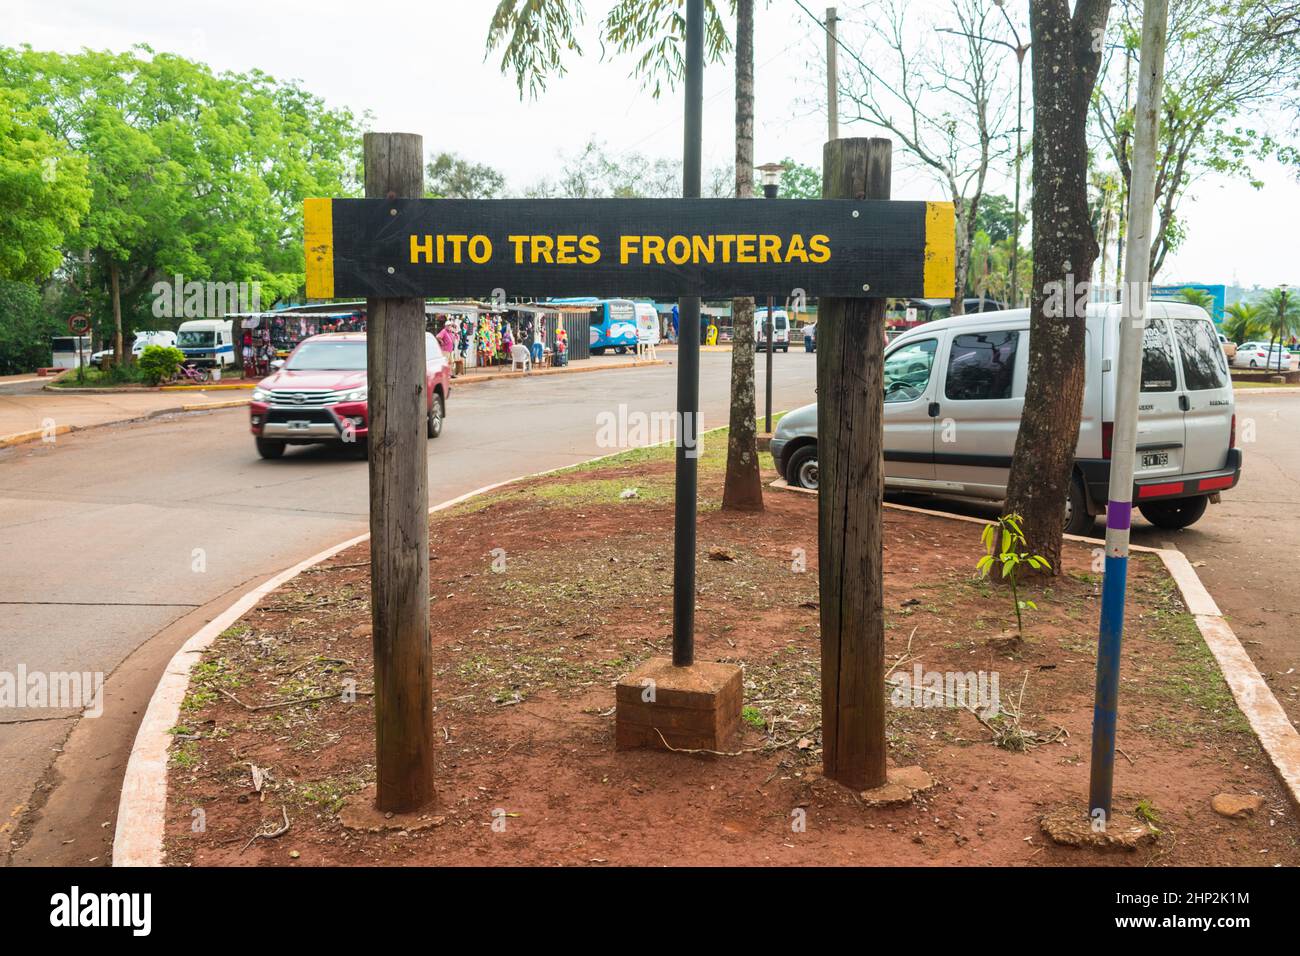 Puerto Iguazu, Argentinien - circa Oktober 2019: Hito Tres Fronteras (Triple Frontier Milestone) Schild - beliebtes Touristenziel in Puerto Iguazu Stockfoto